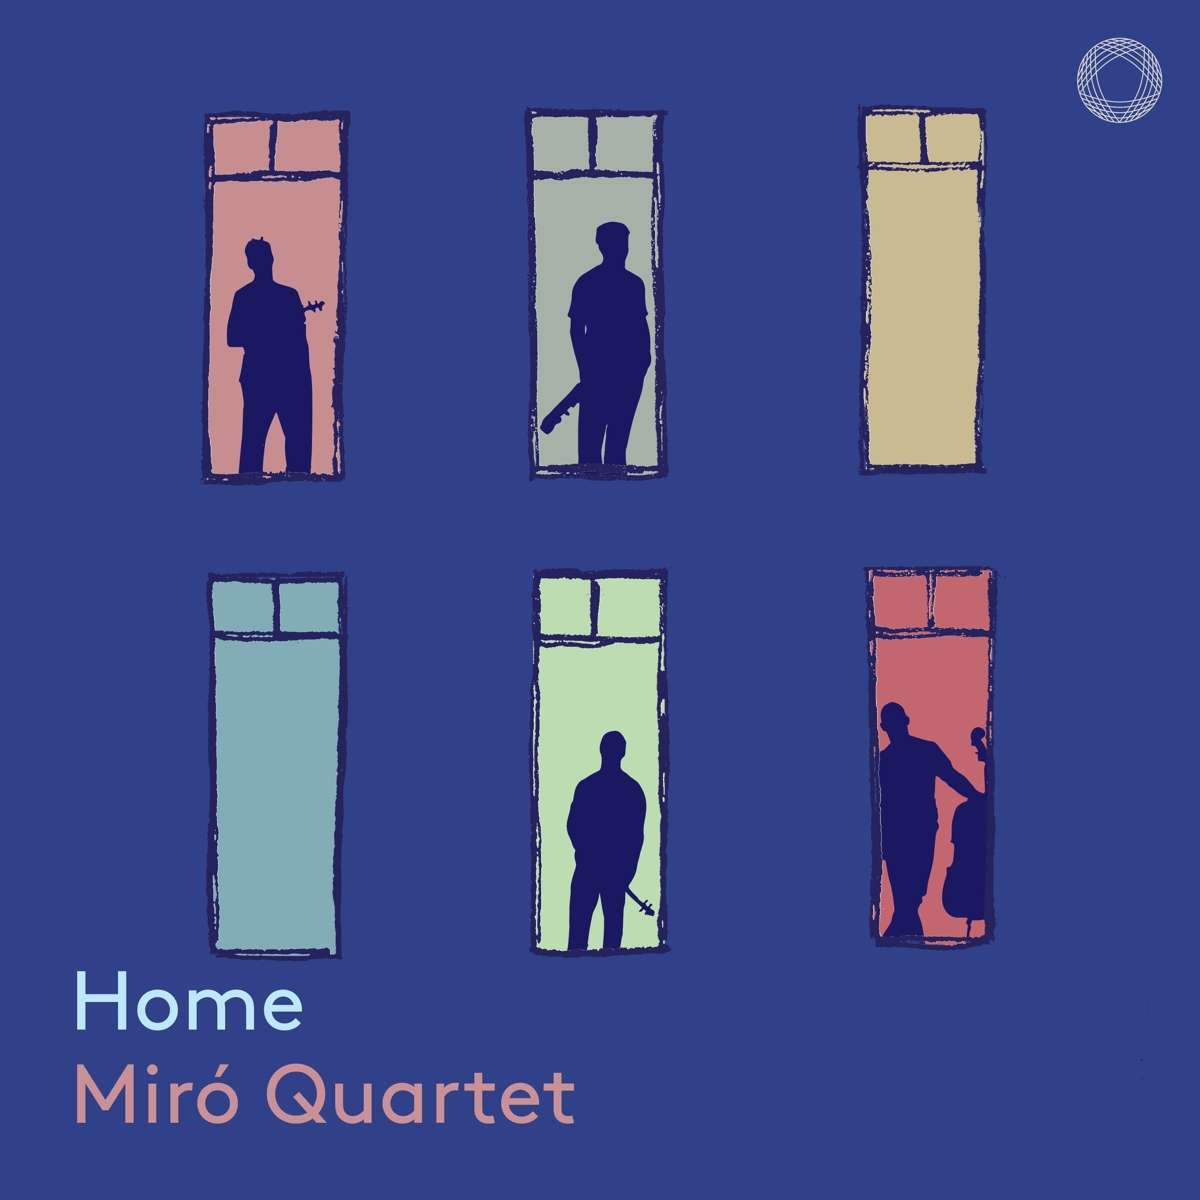 Home / Miró Quartet